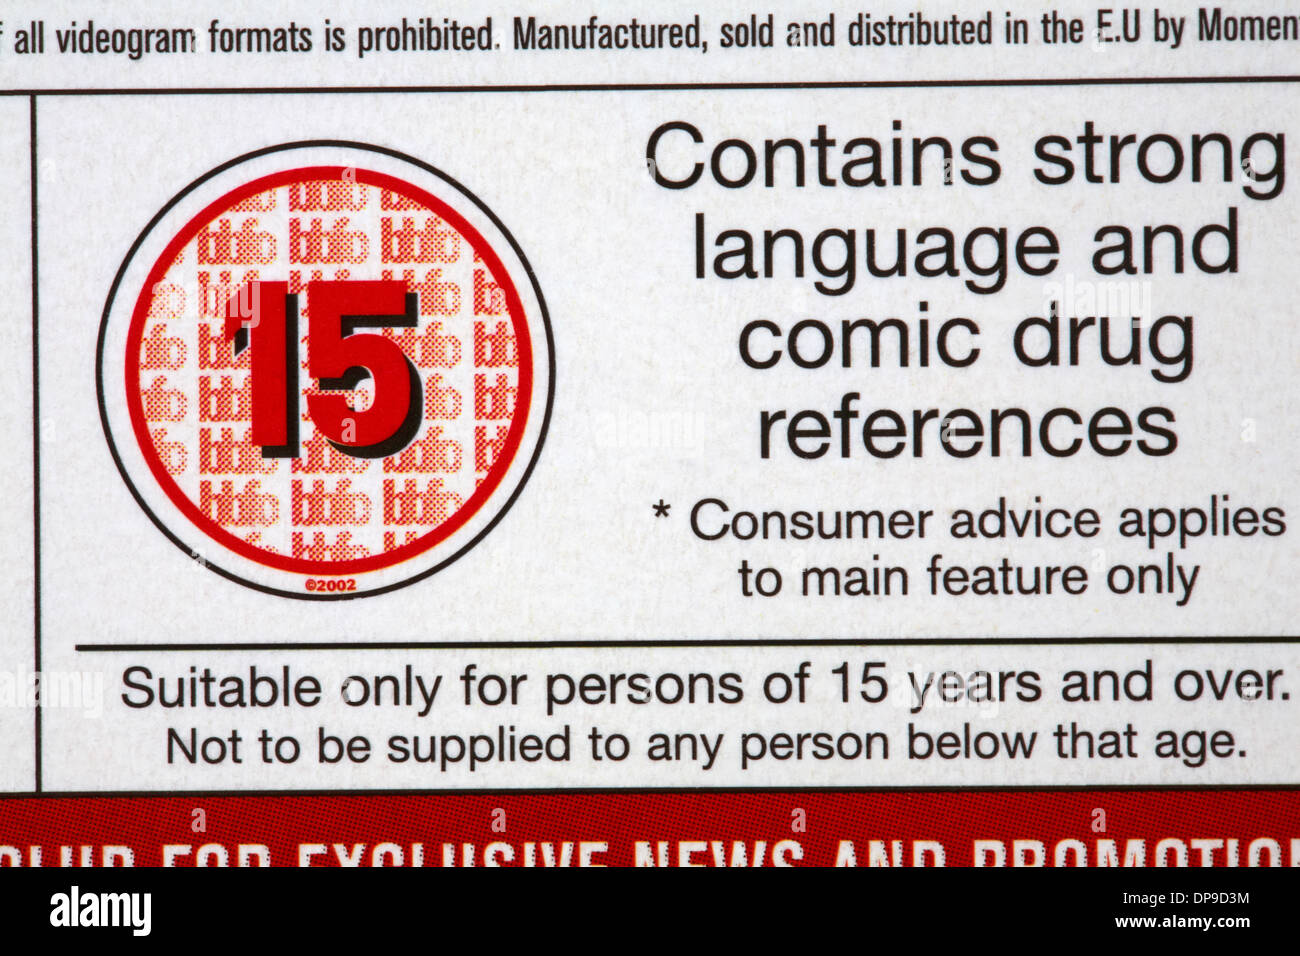 15 note sur le boîtier du DVD - contient des termes forts et des références à la drogue de la bande dessinée s'applique aux conseils de consommation principale caractéristique seulement Banque D'Images